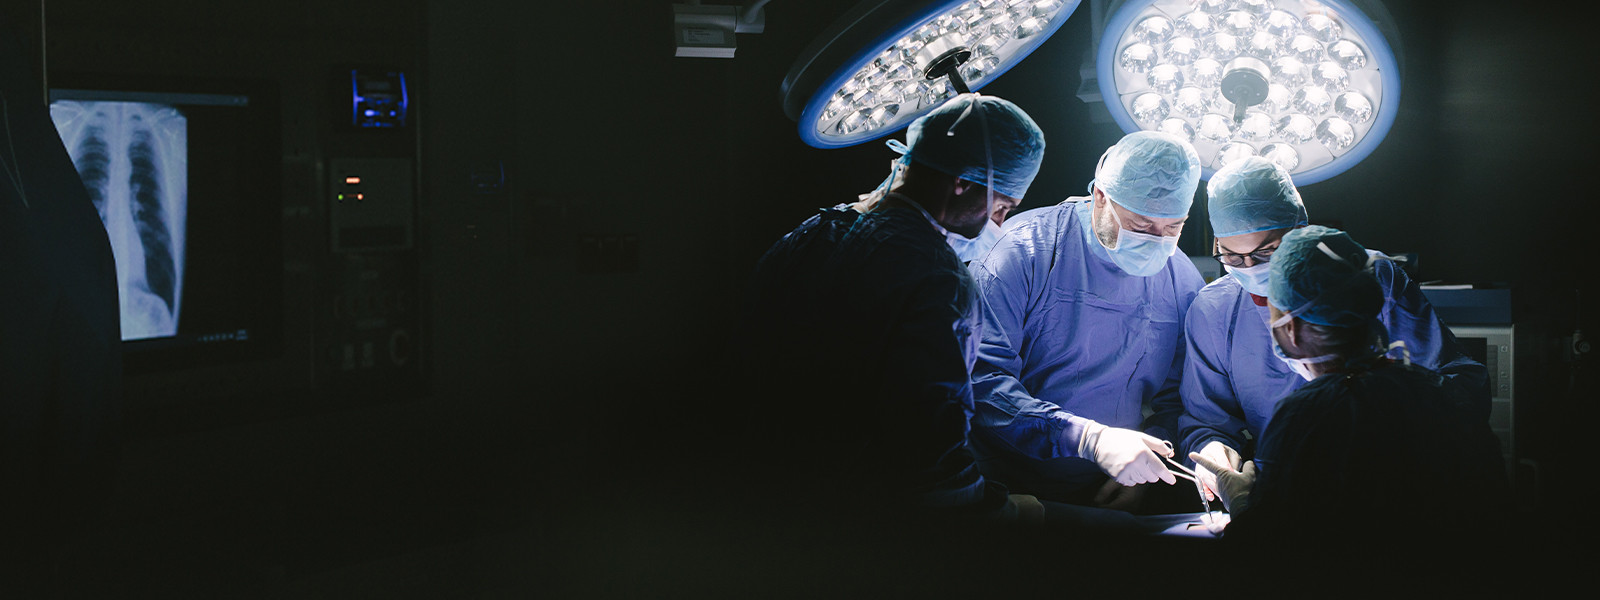 kirurger som jobber i en operasjonsstue